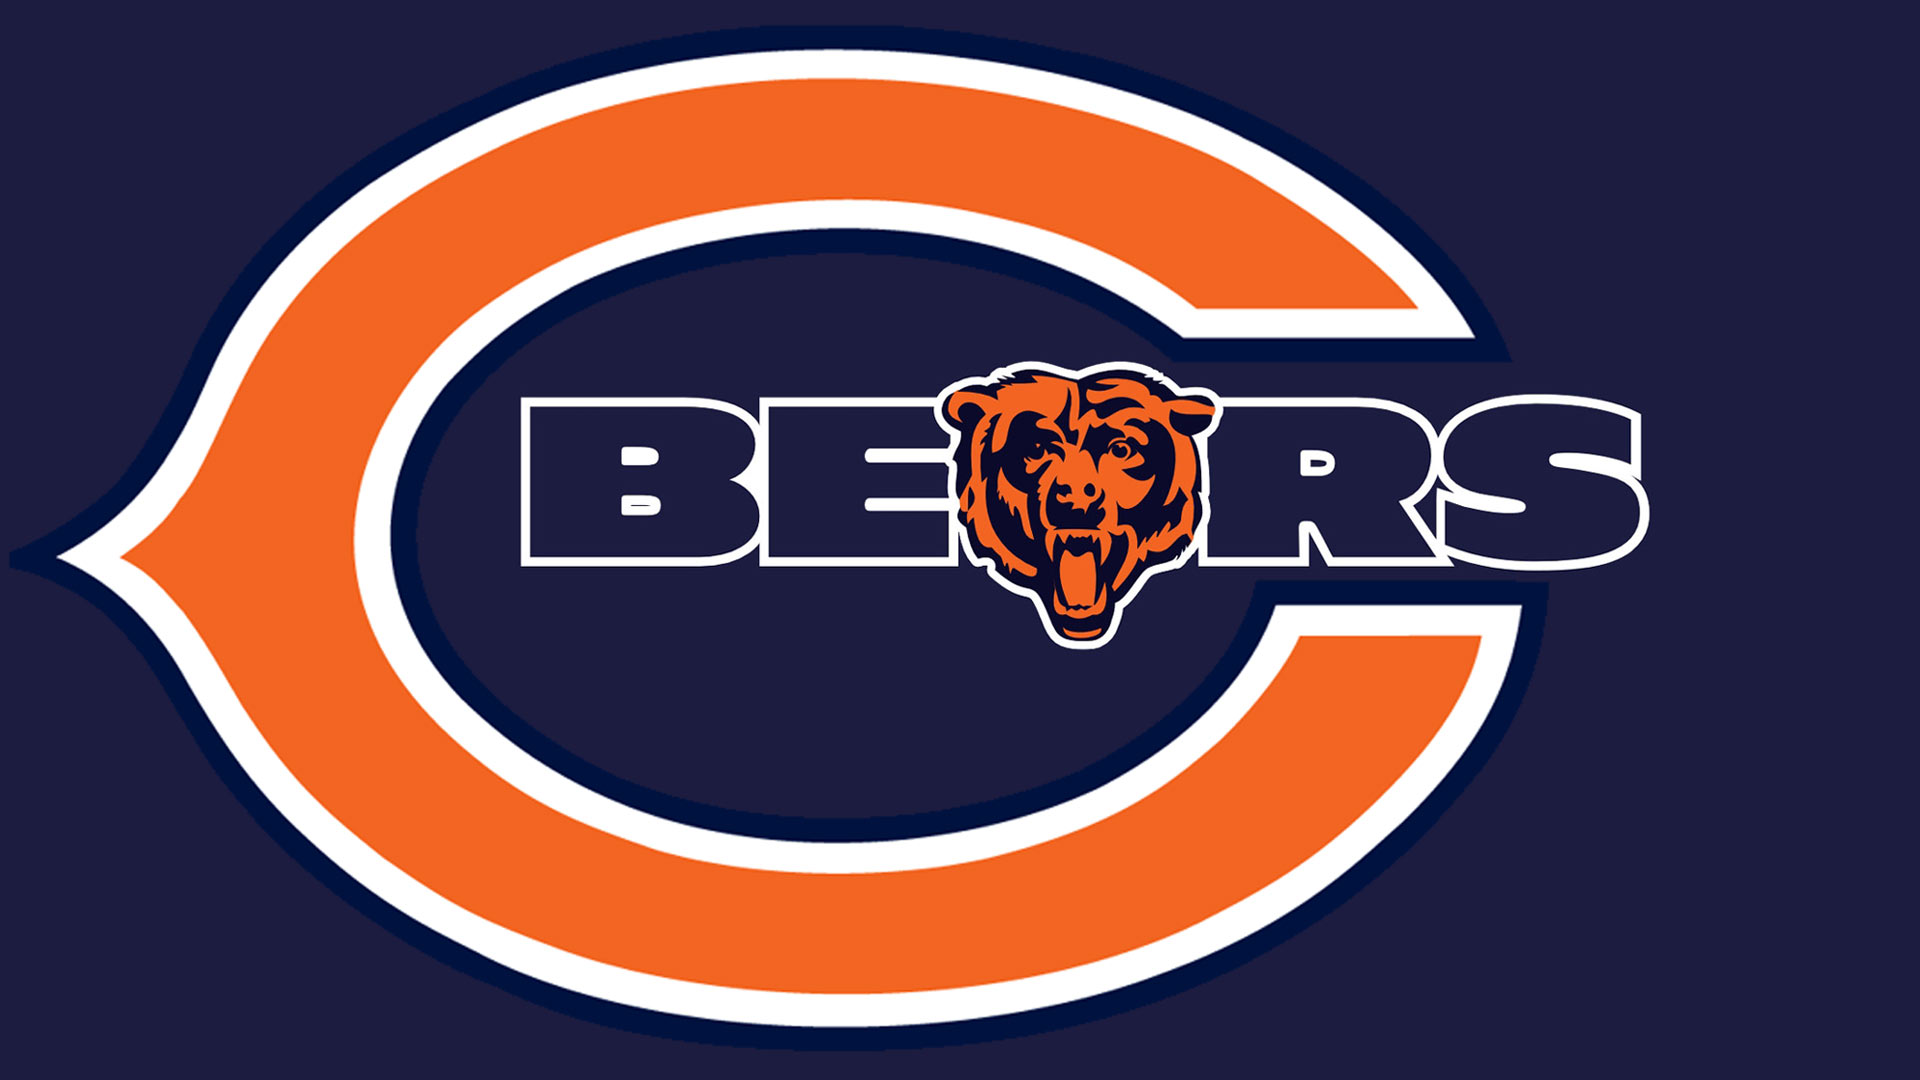 Chicago Bears logo wallpaper 1920x1080